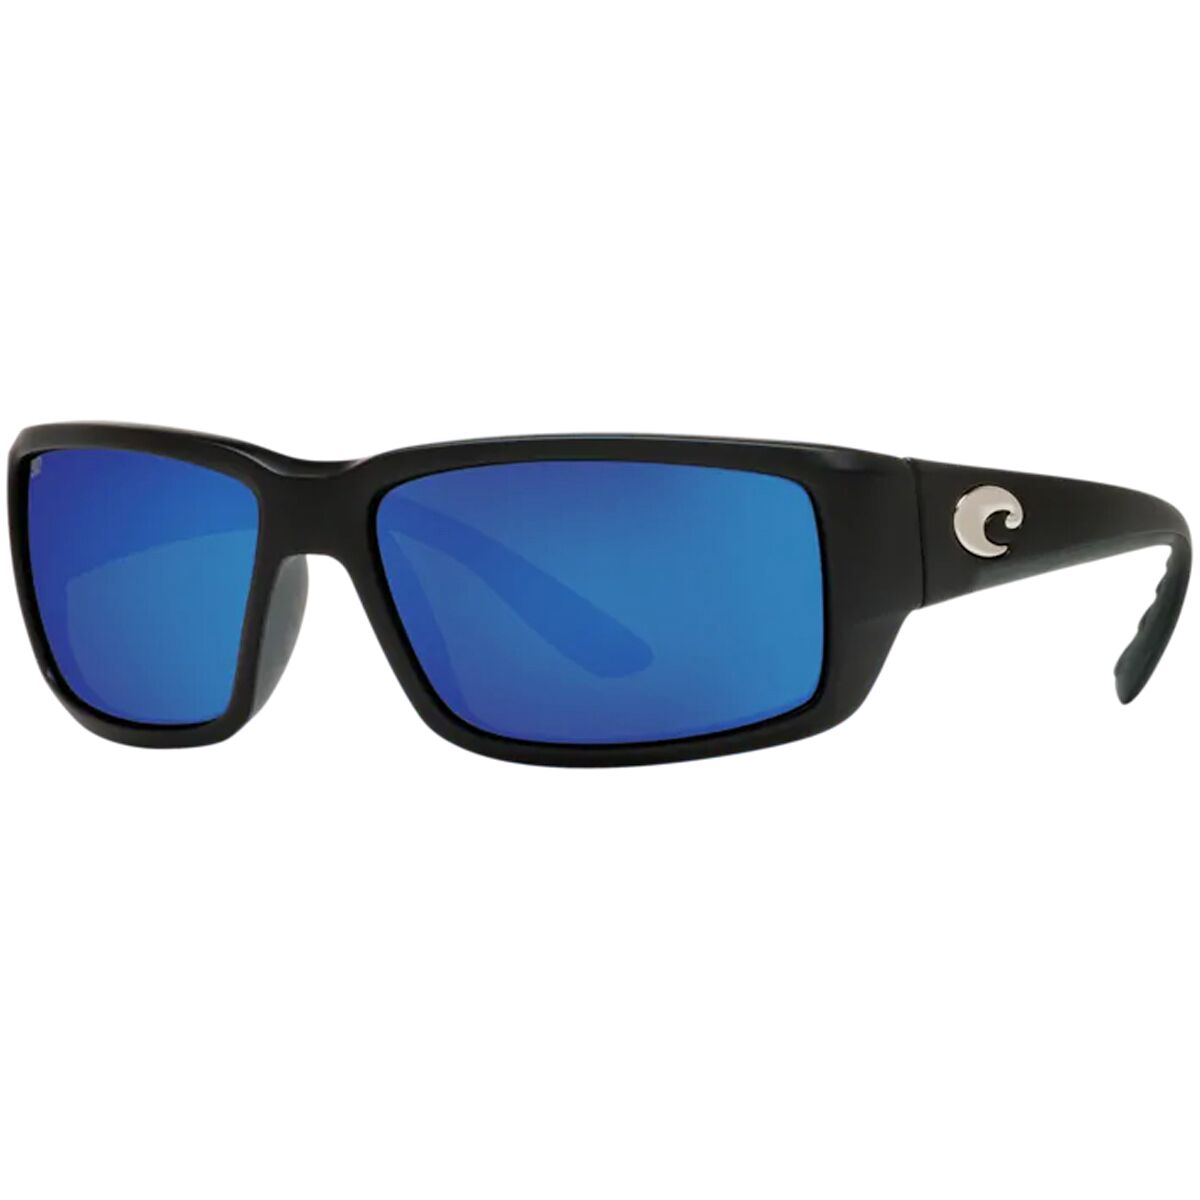 Costa Fantail Pro 580G Polarized Sunglasses